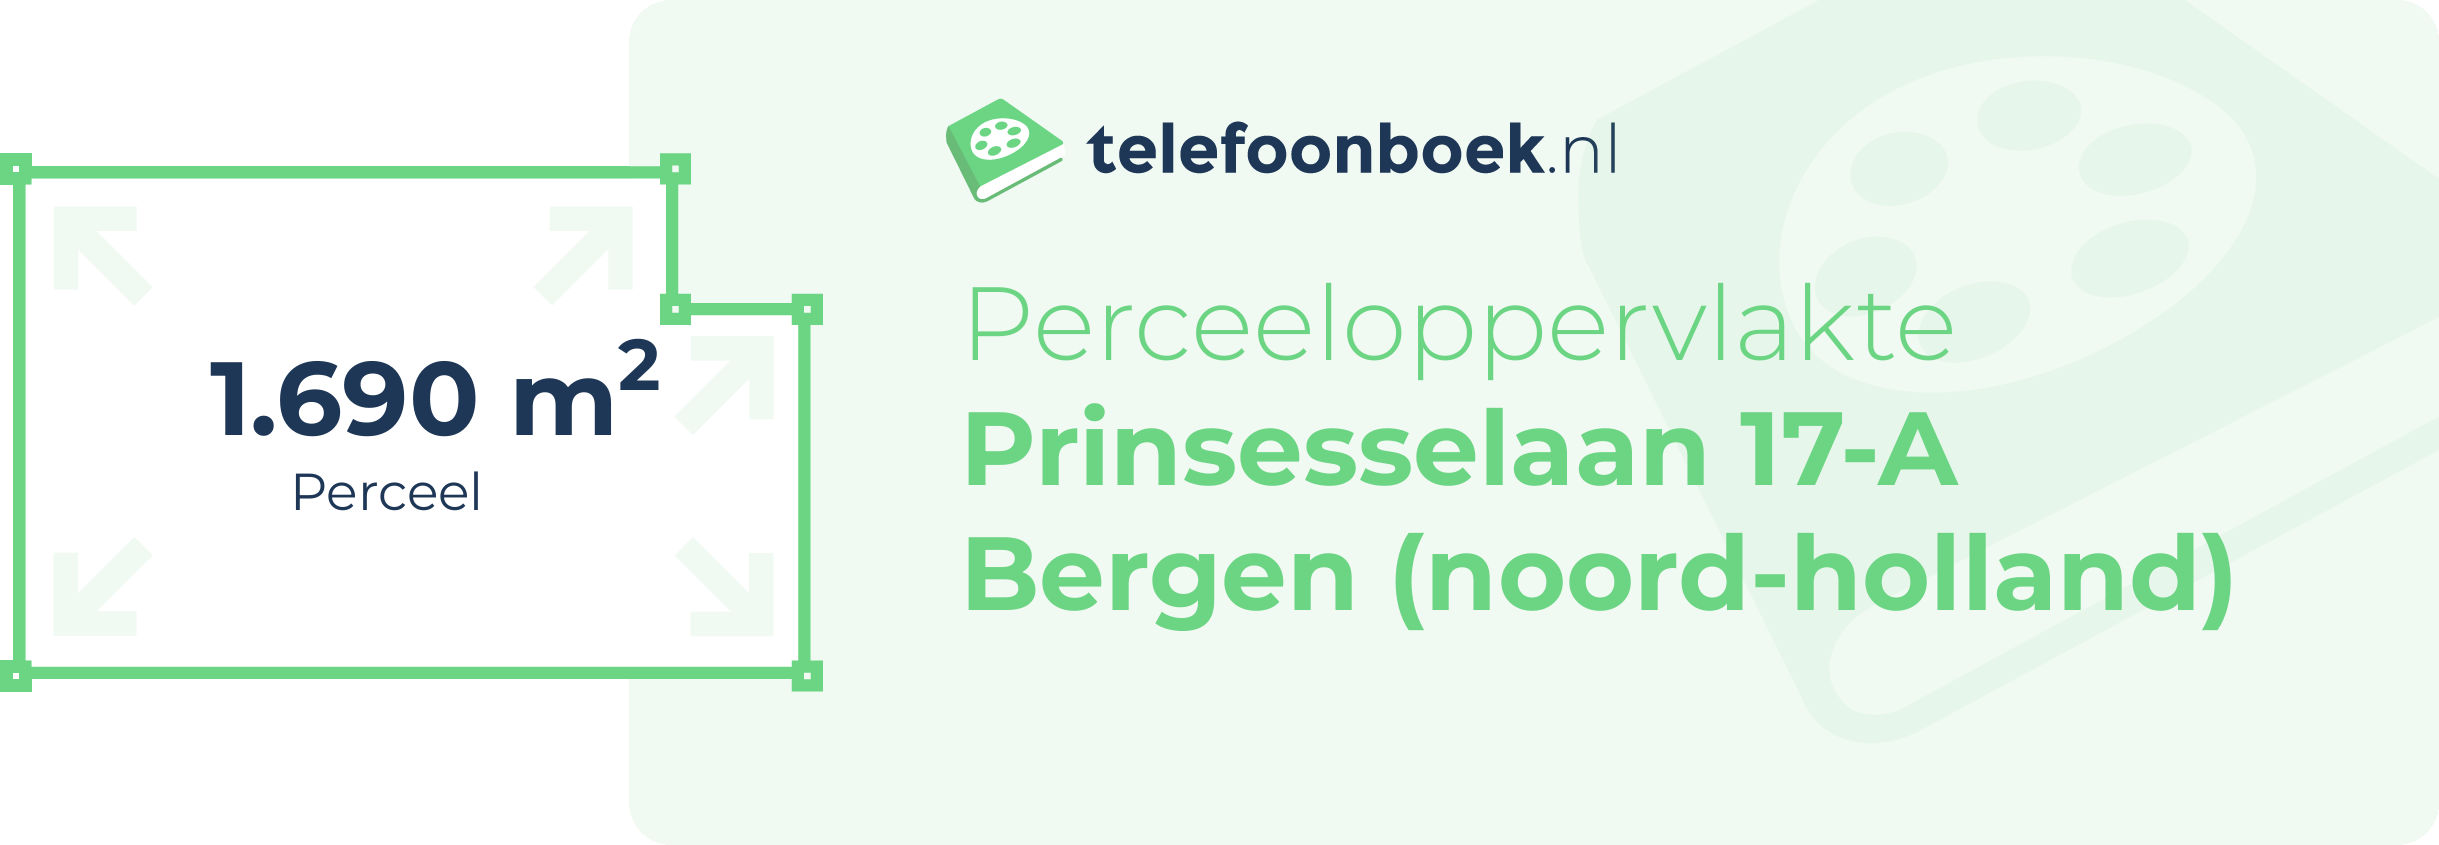 Perceeloppervlakte Prinsesselaan 17-A Bergen (Noord-Holland)